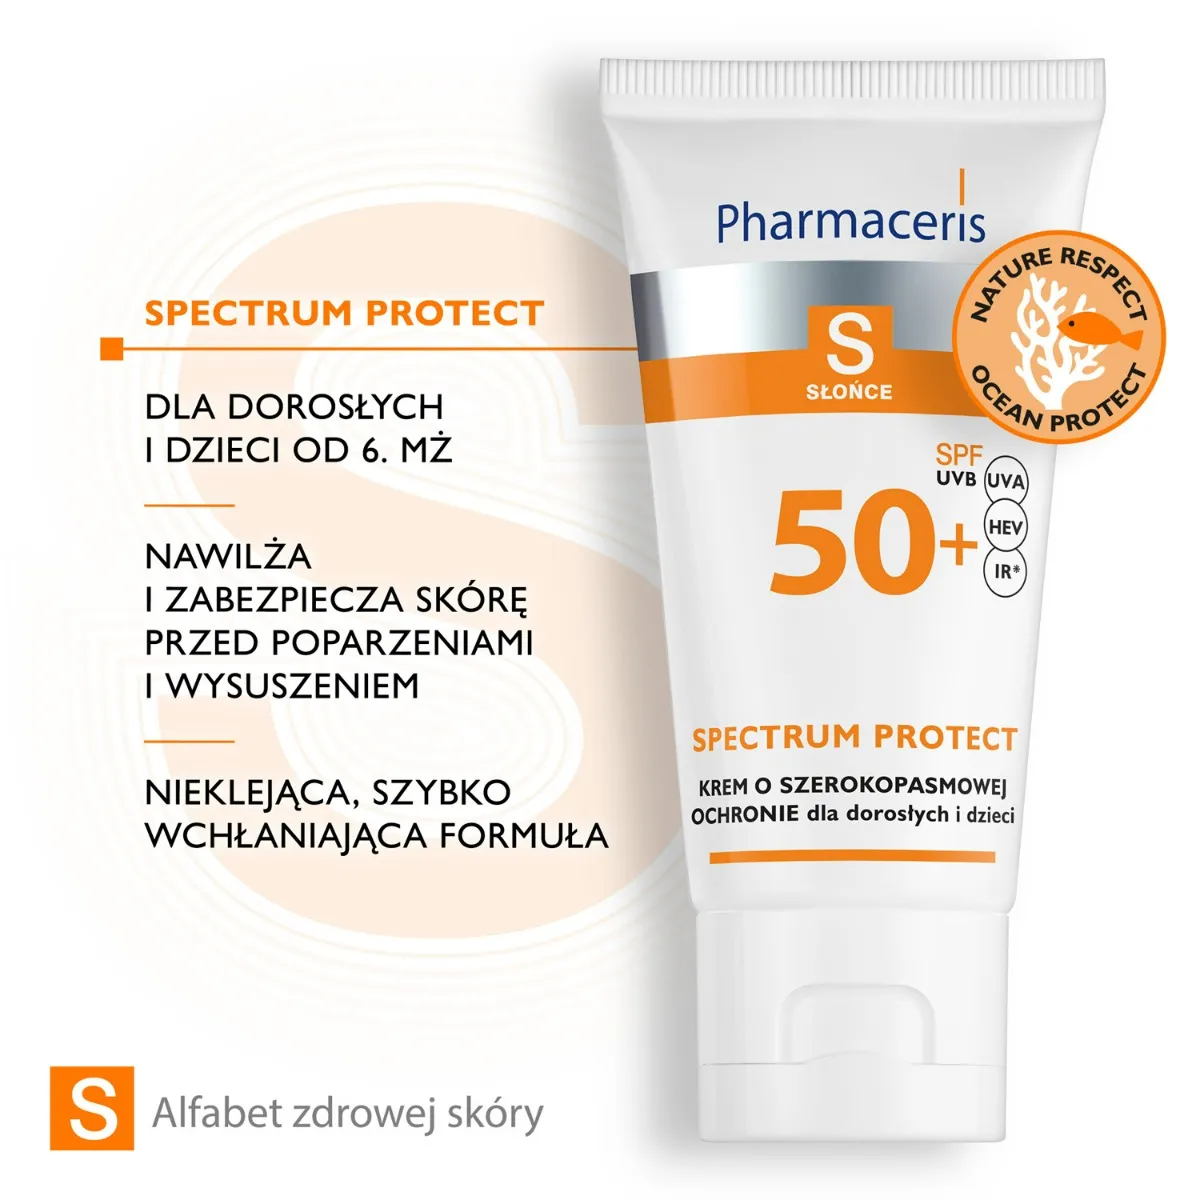 Pharmaceris S Spectrum Protect, krem o szerokopasmowej ochronie przed słońcem, SPF 50+, 50 ml 